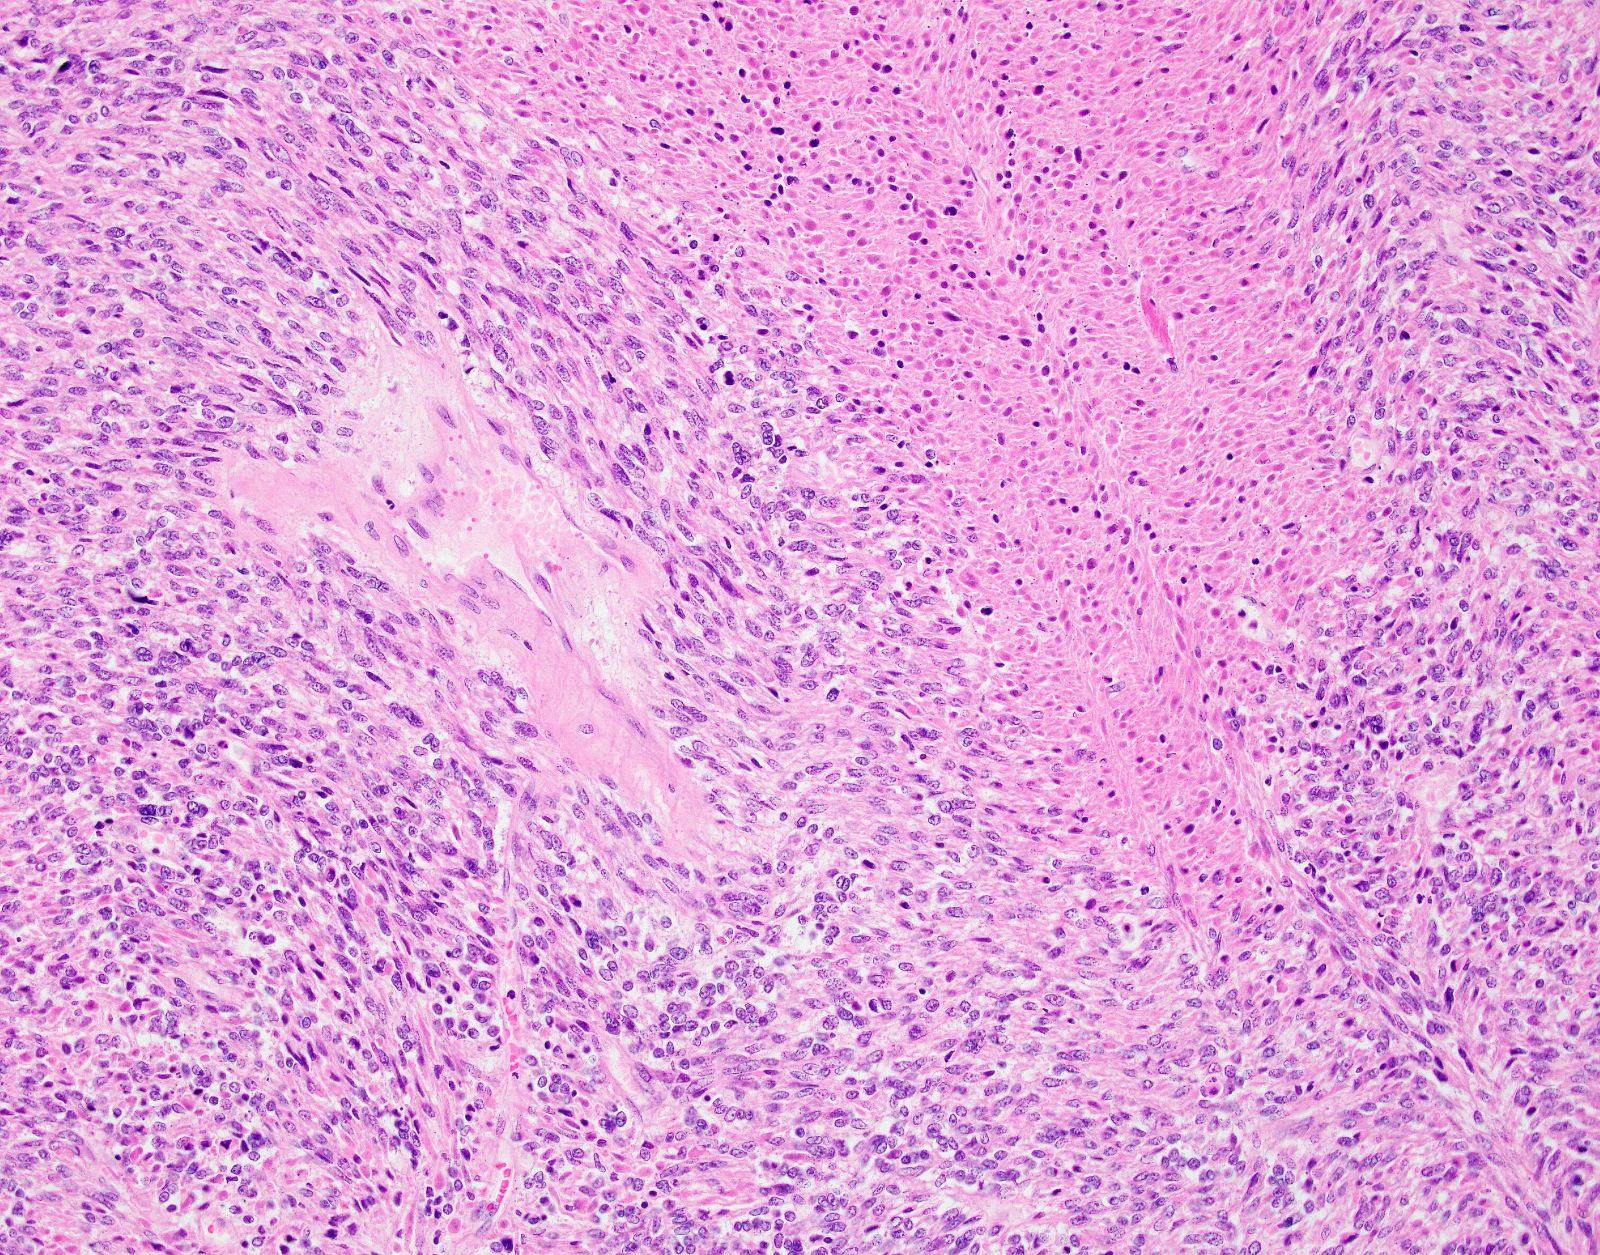 Tumor cell necrosis